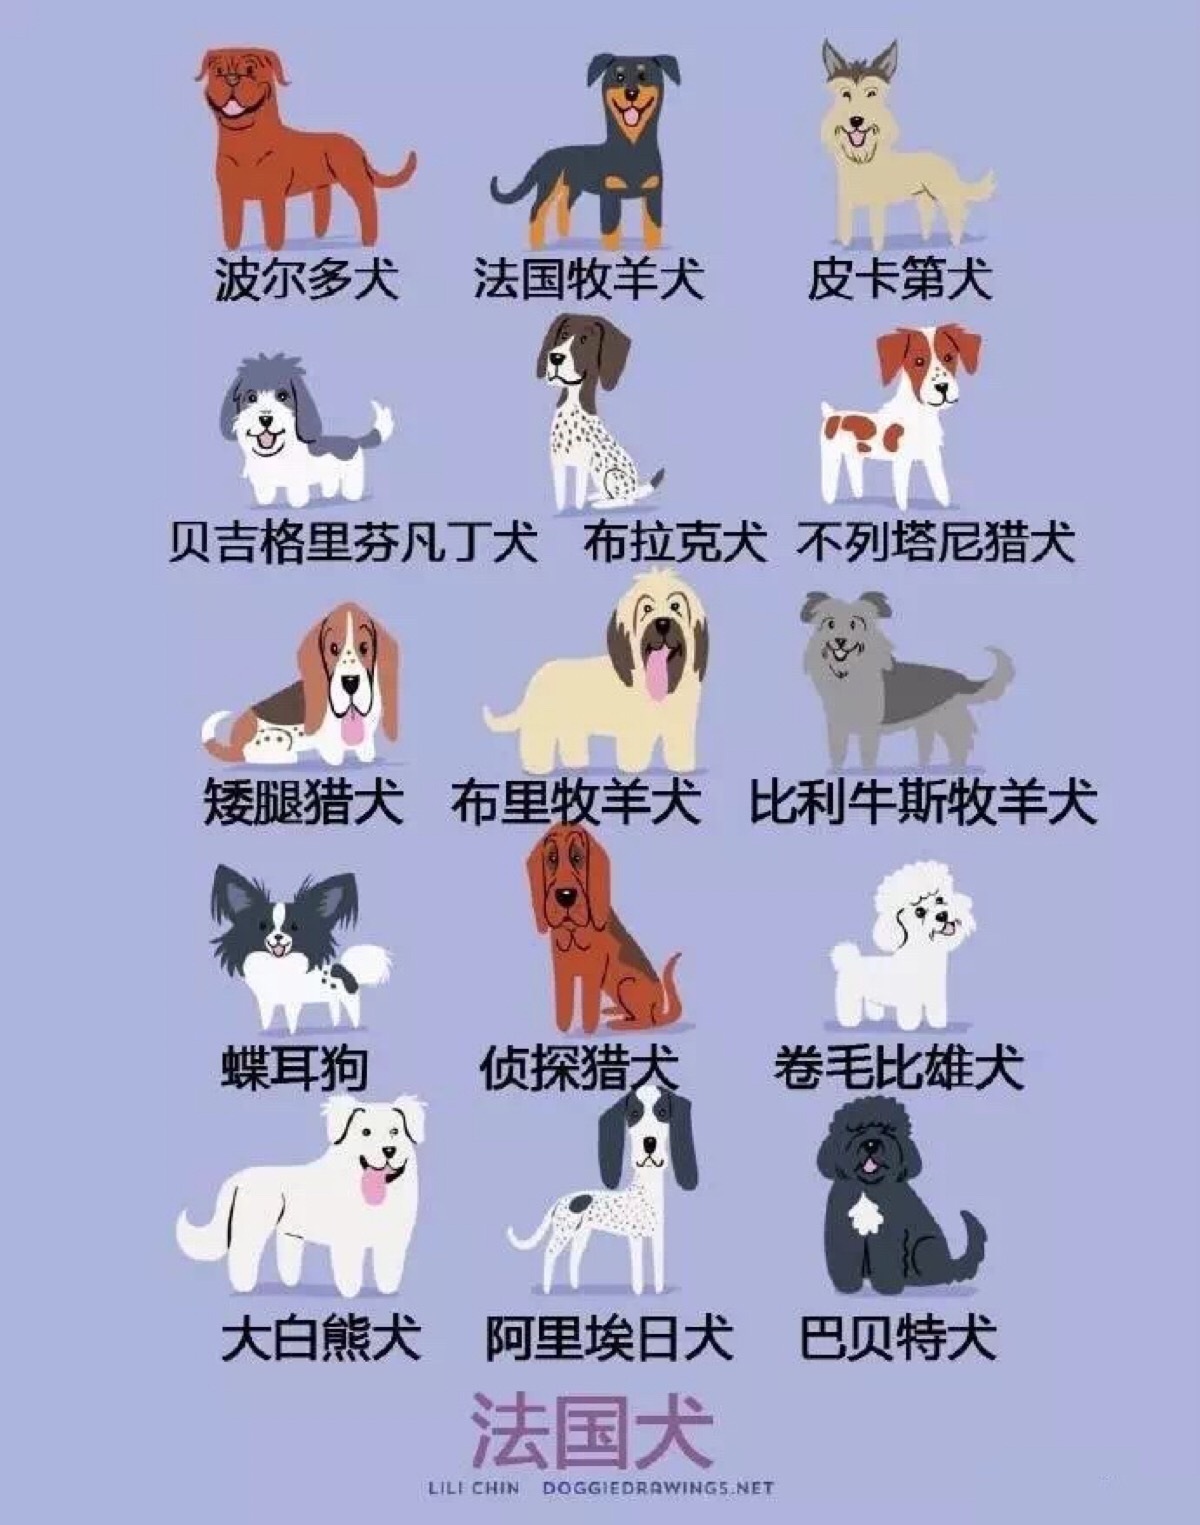 狗的类型 基本图片